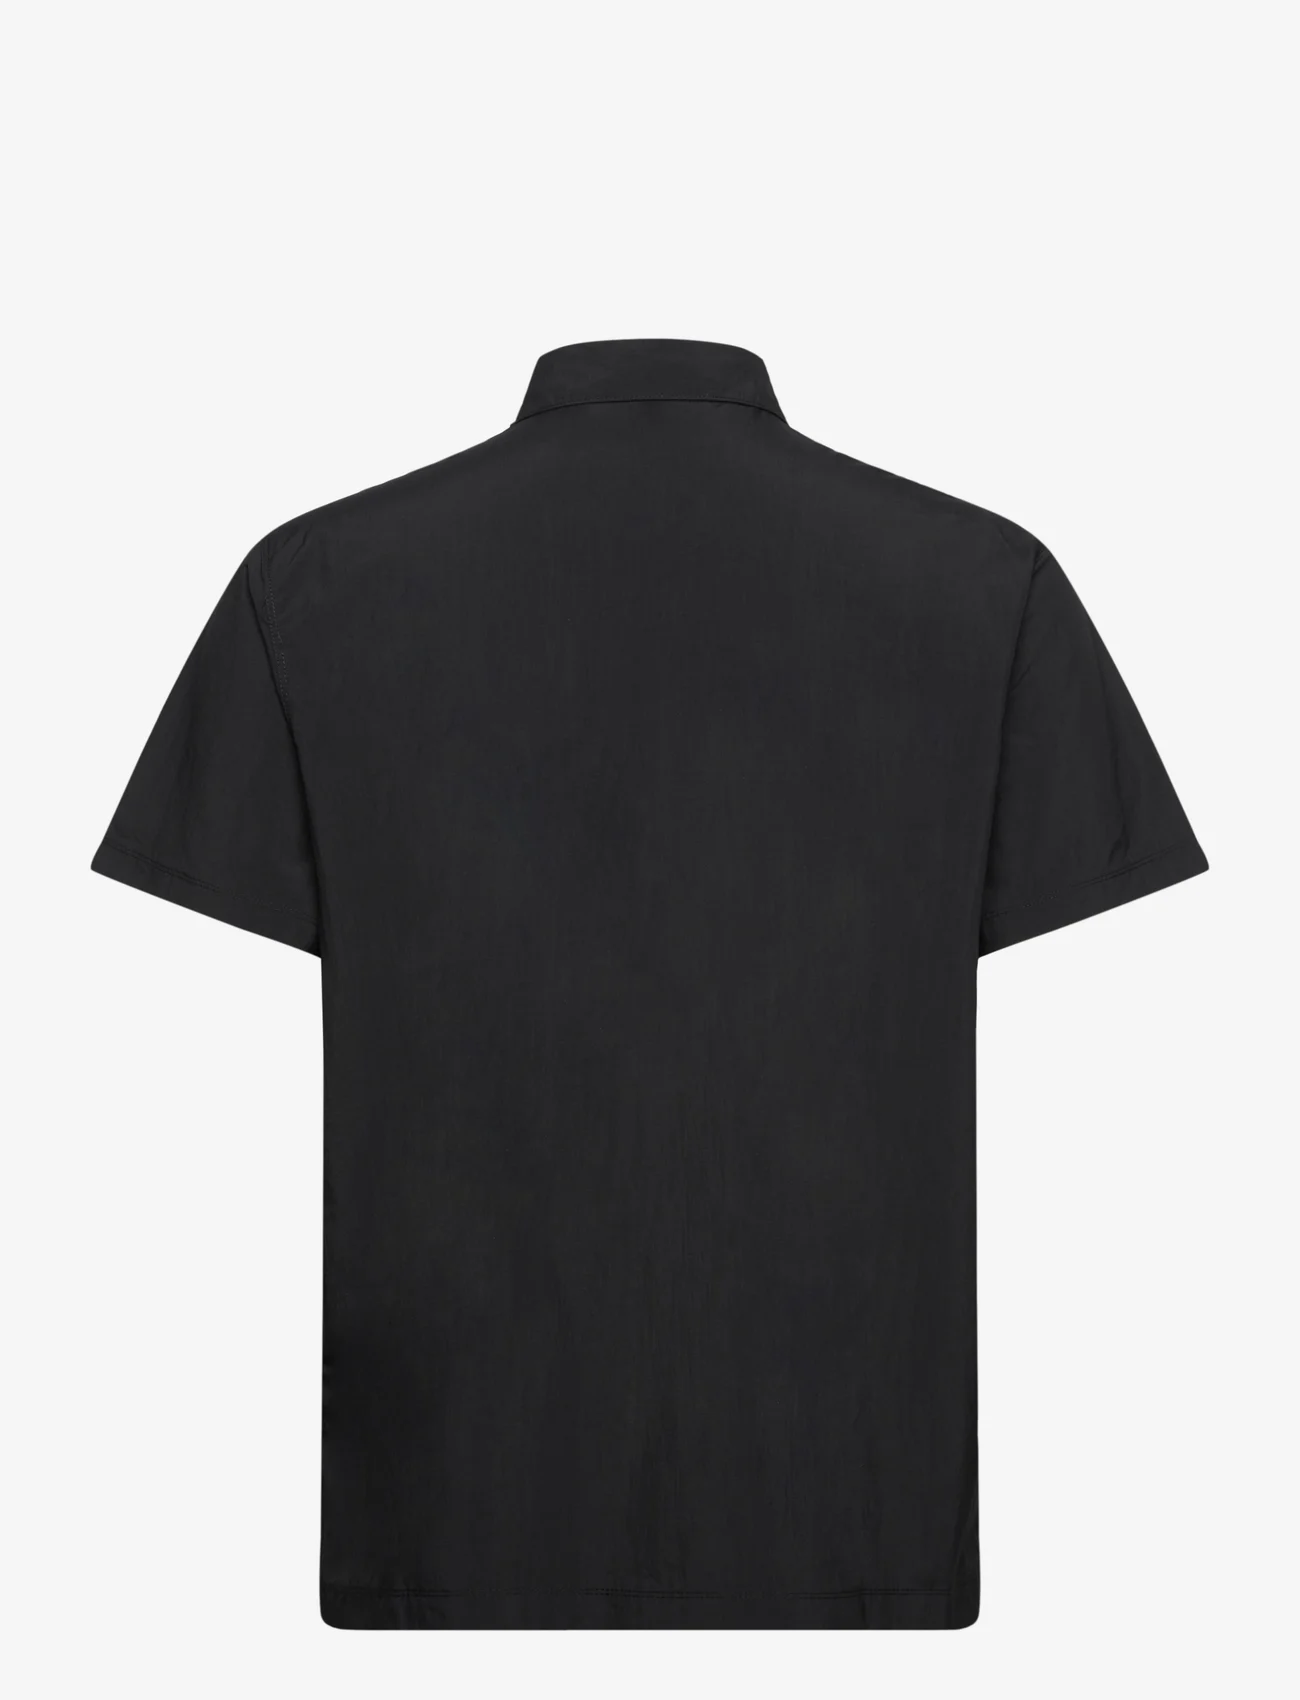 Columbia Sportswear - Mountaindale Outdoor SS Shirt - laisvalaikio marškiniai - black - 1